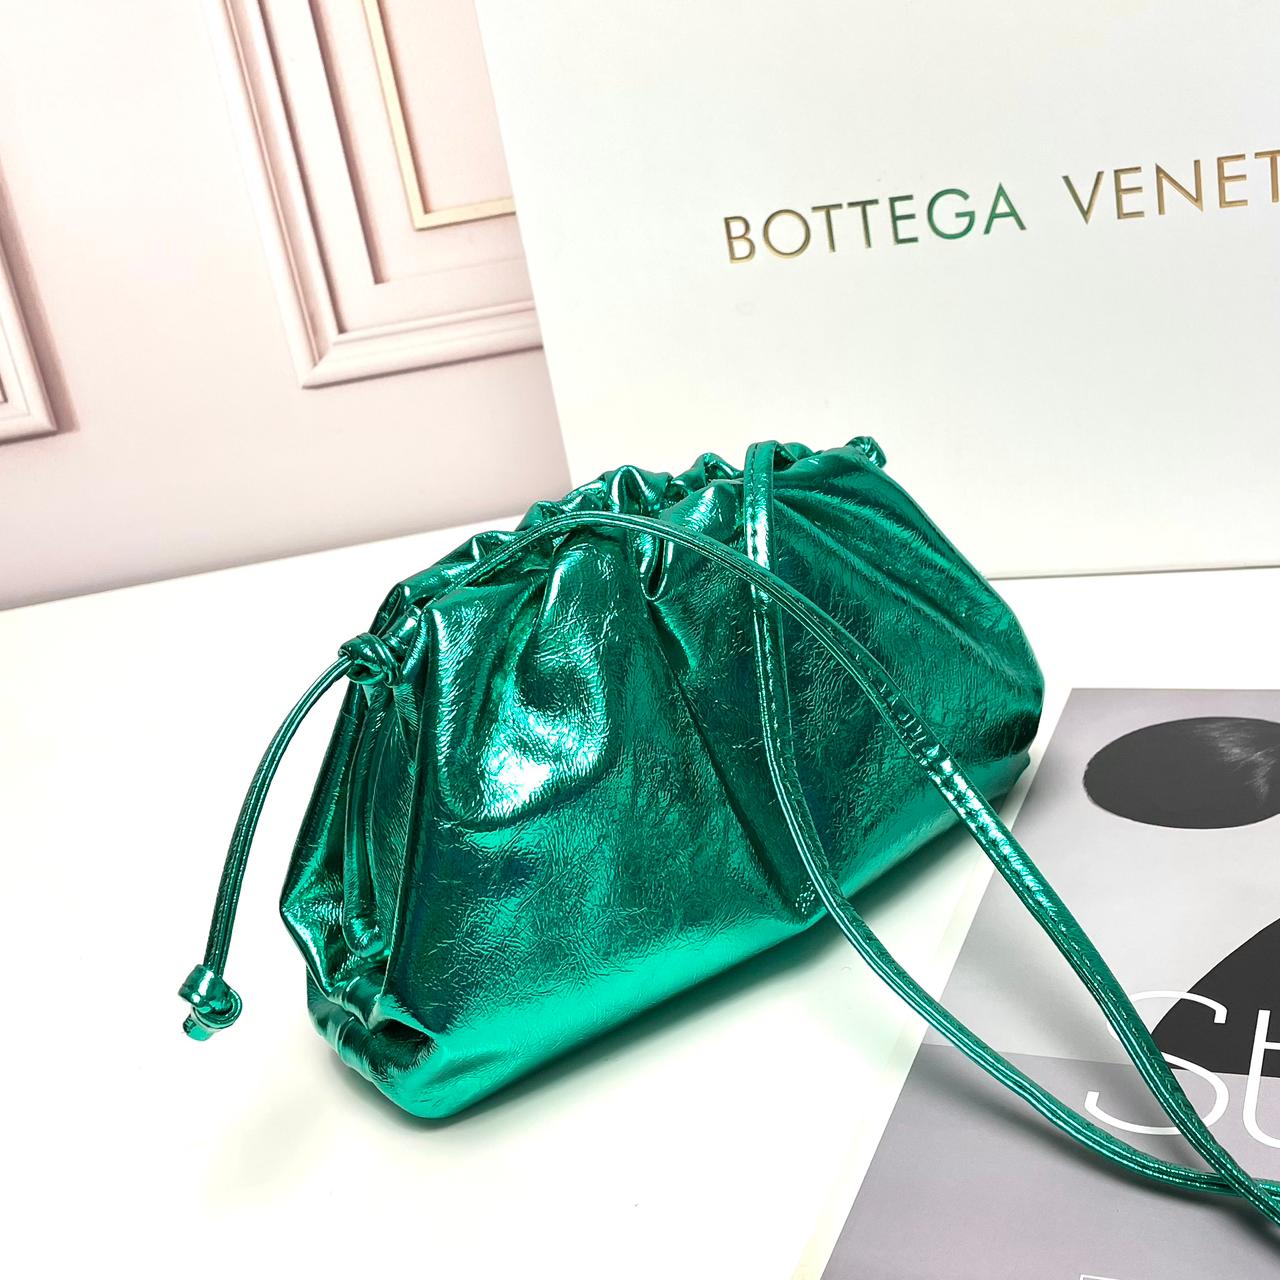 Bottega Veneta The Pouch Mini in Metallic